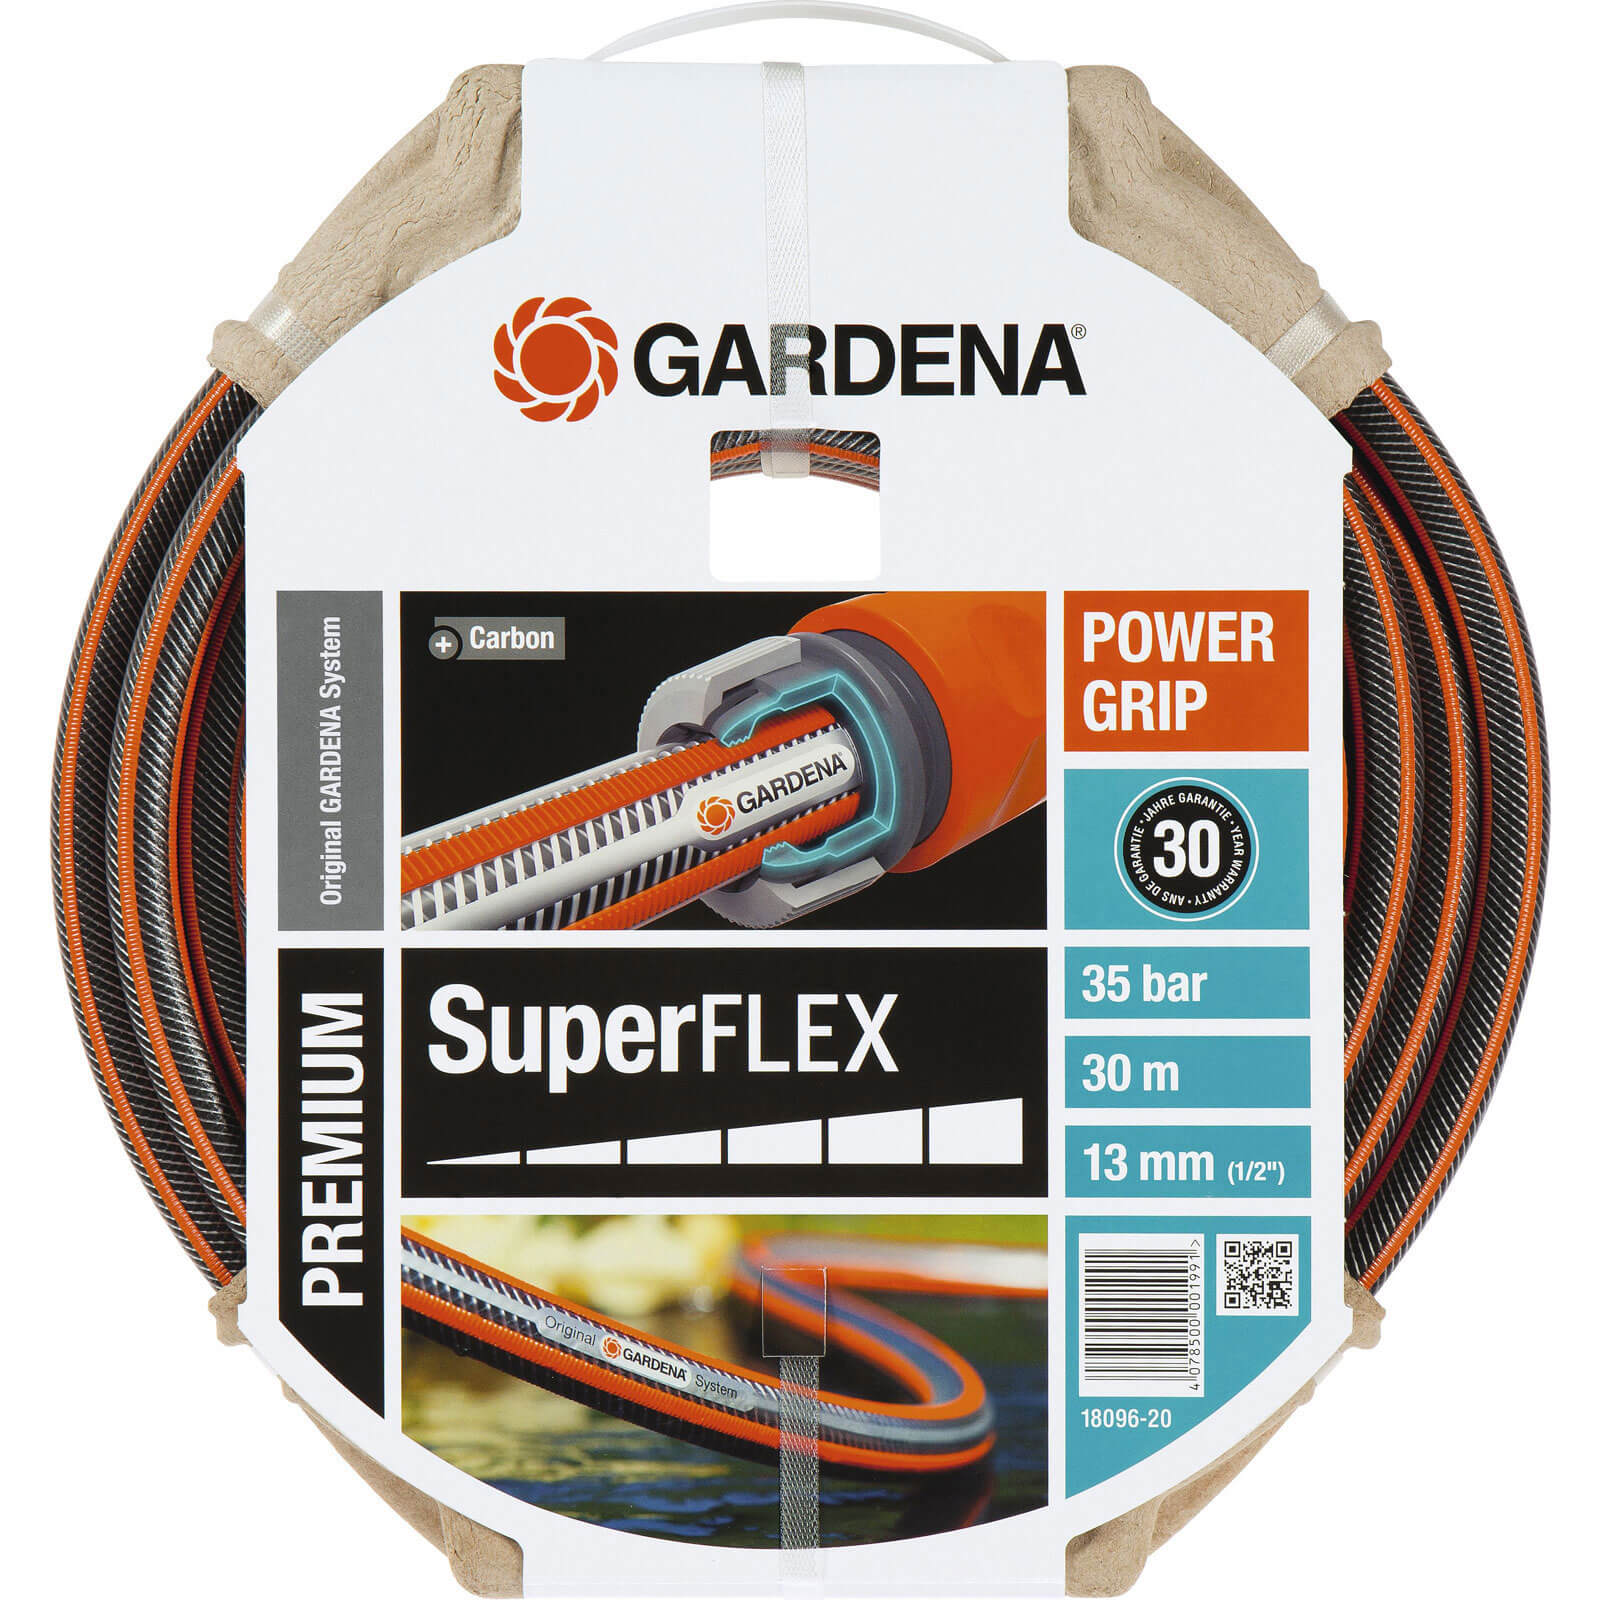 Image of Gardena SuperFlex Premium Hose Pipe 1/2" / 12.5mm 30m Black / Orange